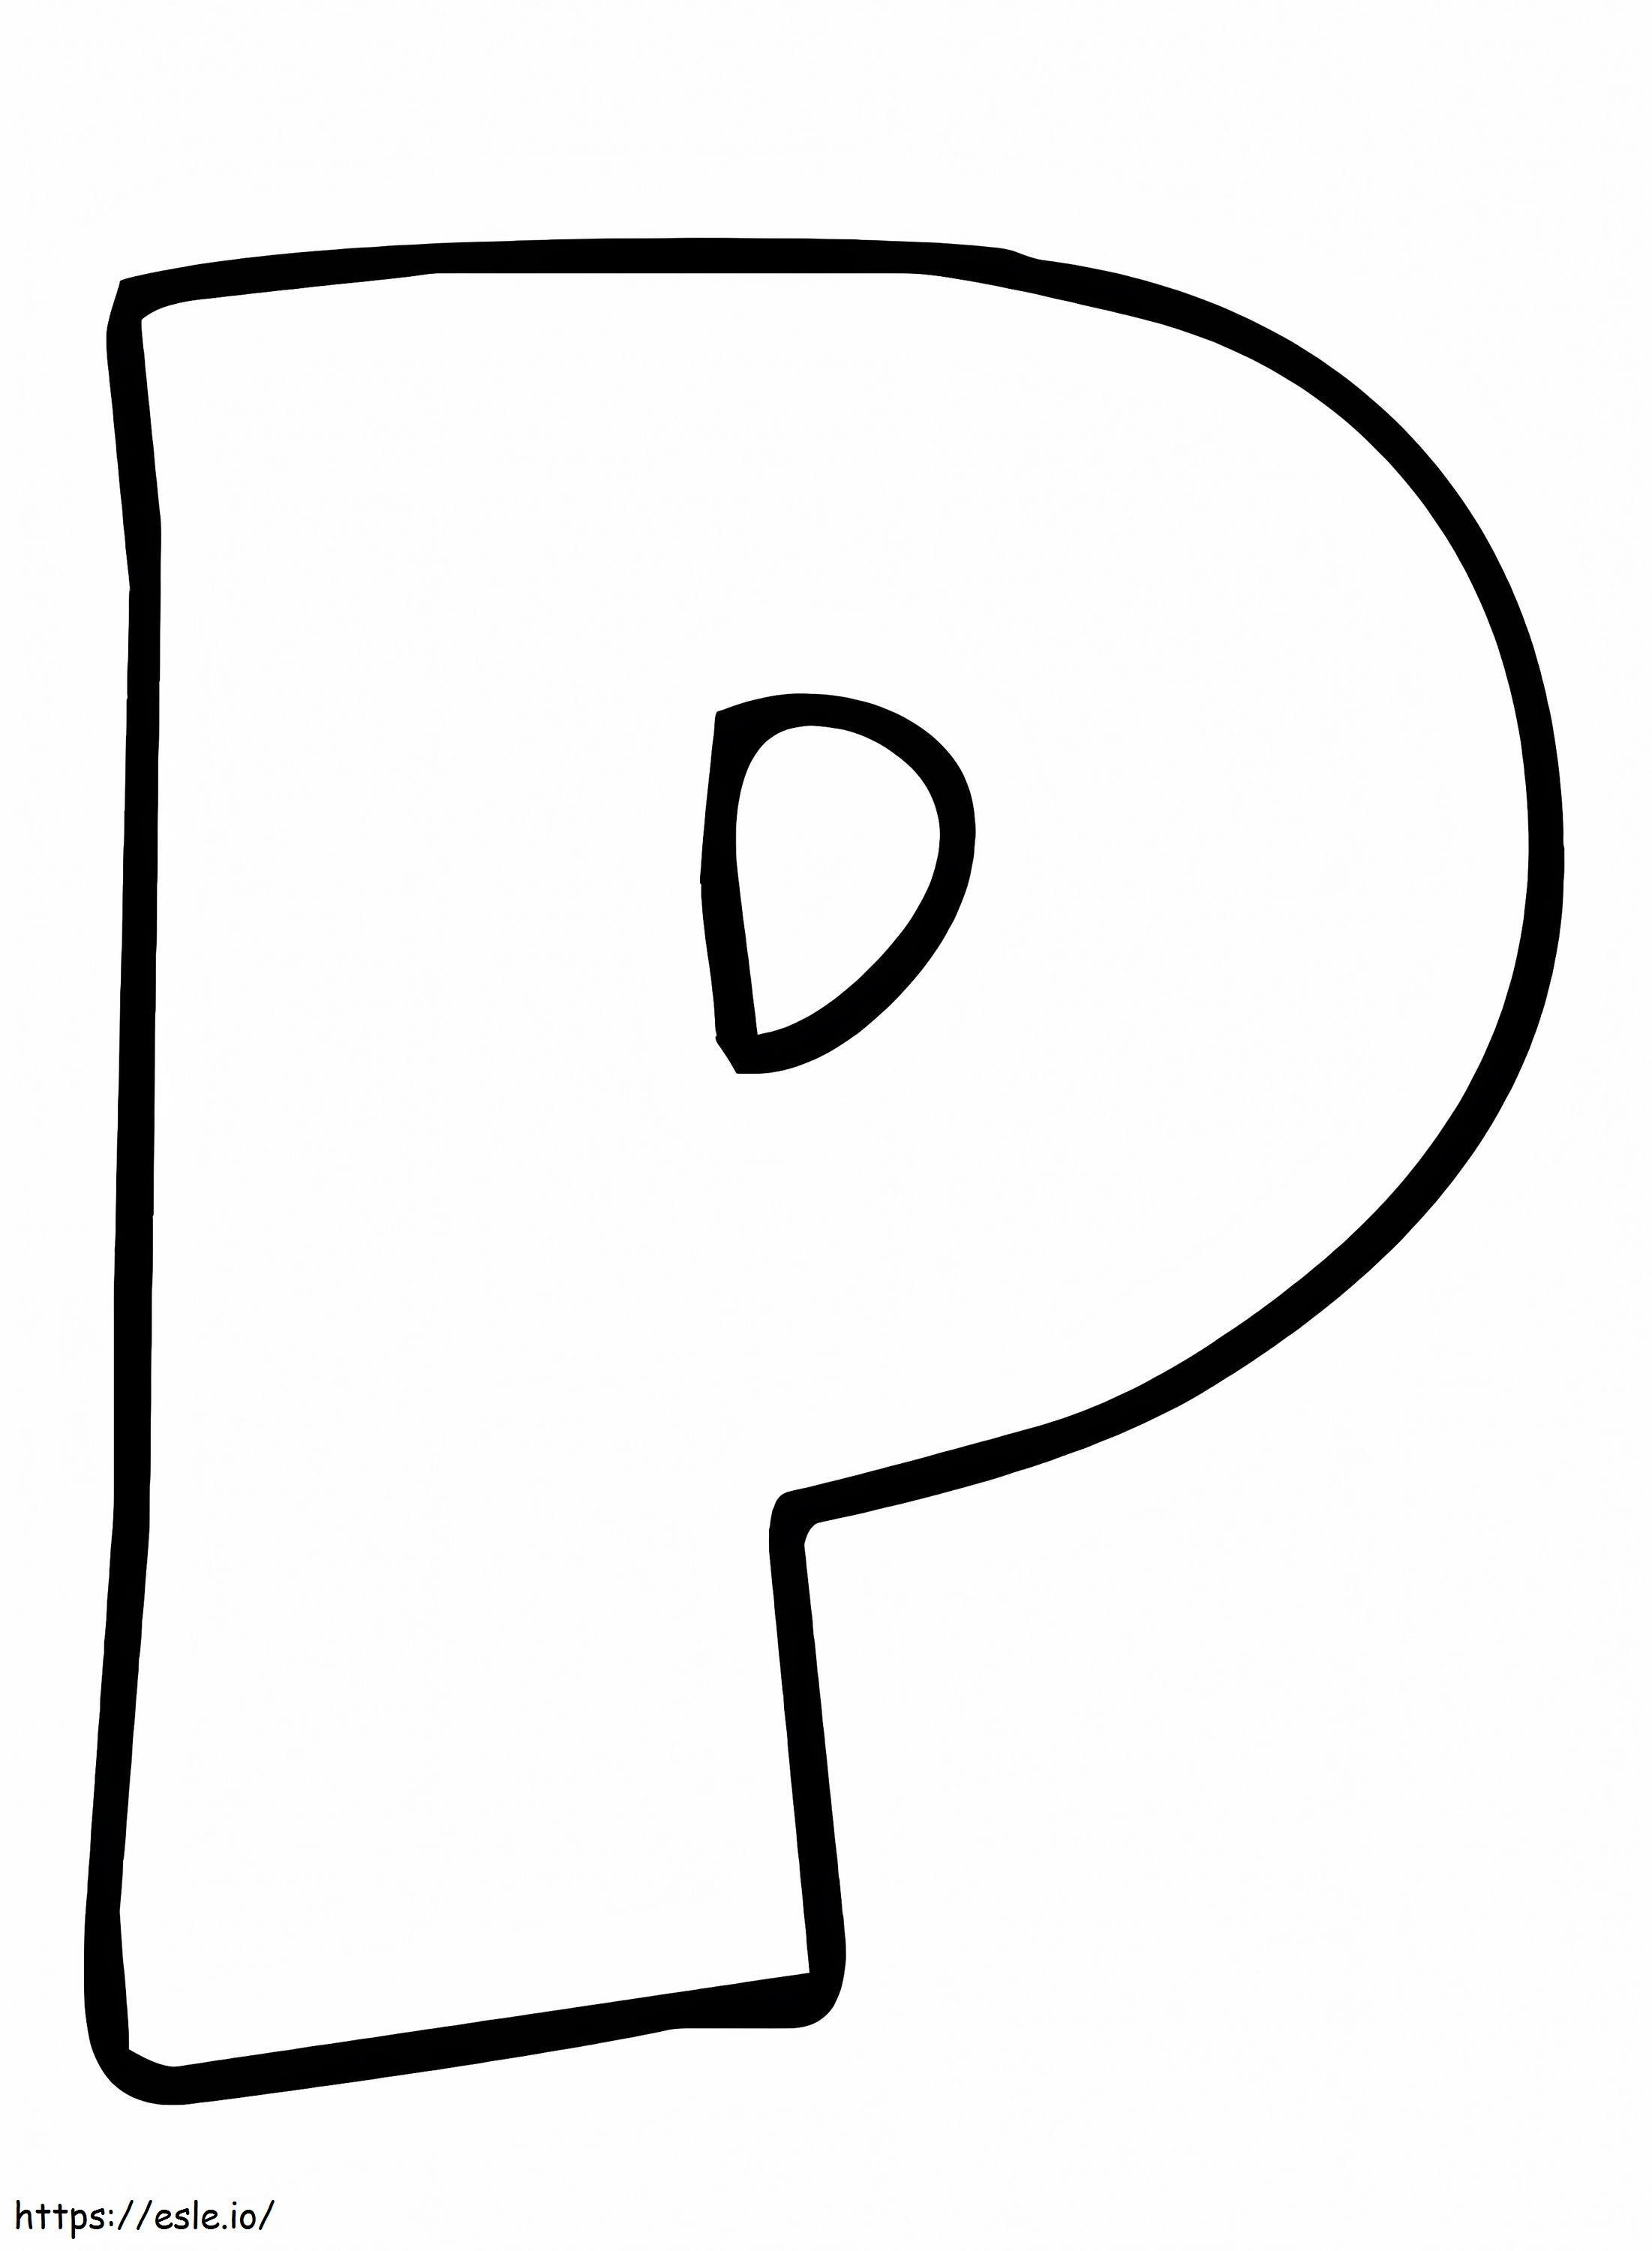 Egyszerű P betű kifestő